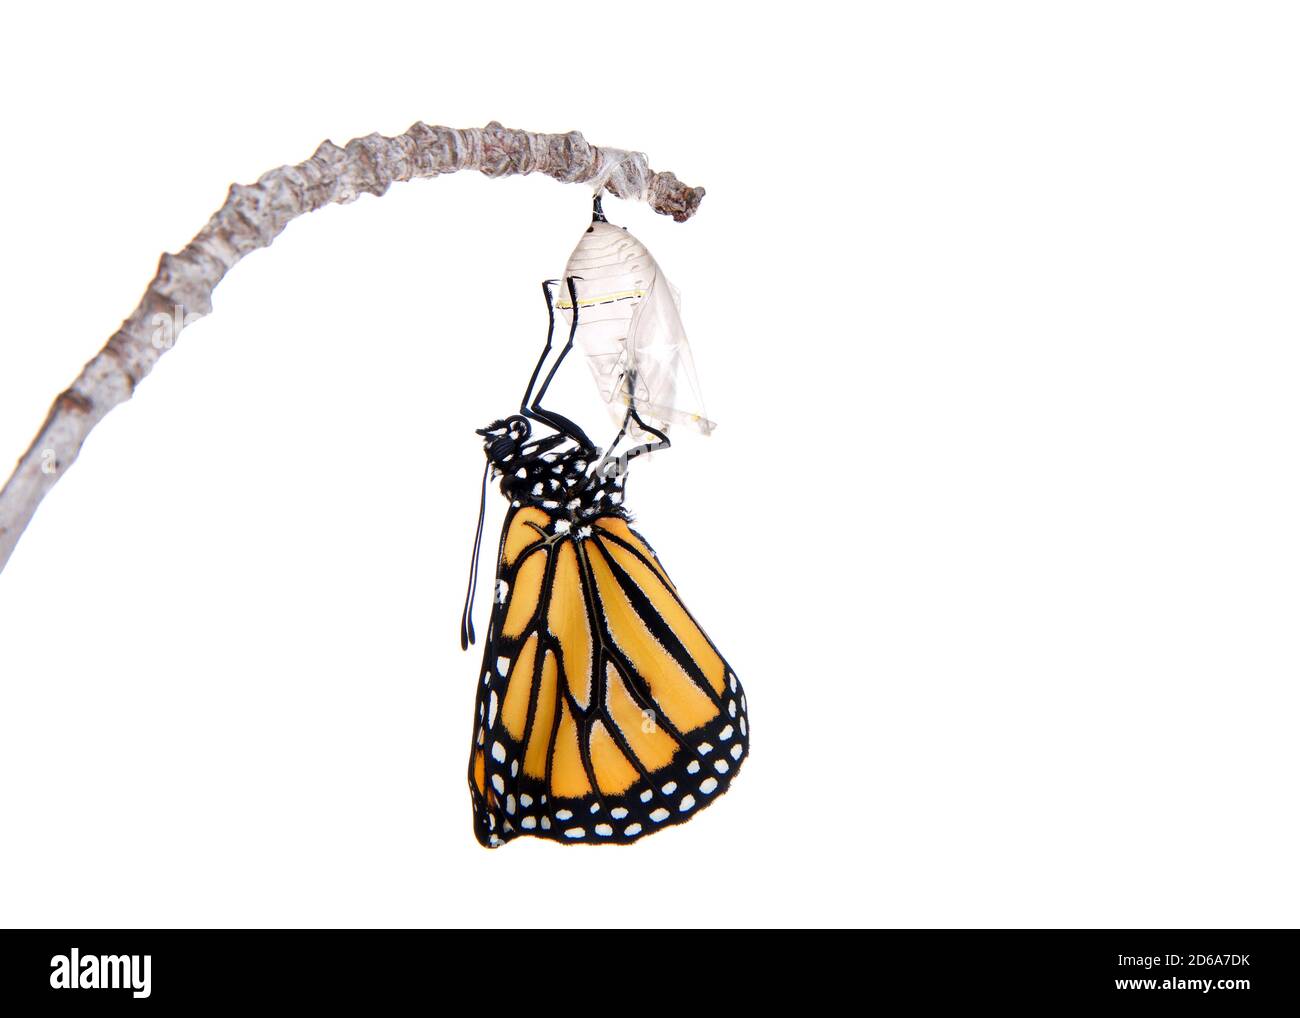 Primo piano di una farfalla monarca appena emersa da crisalide appeso su un piccolo ramo, ali piegate dal confinamento. Isolato su bianco. Foto Stock